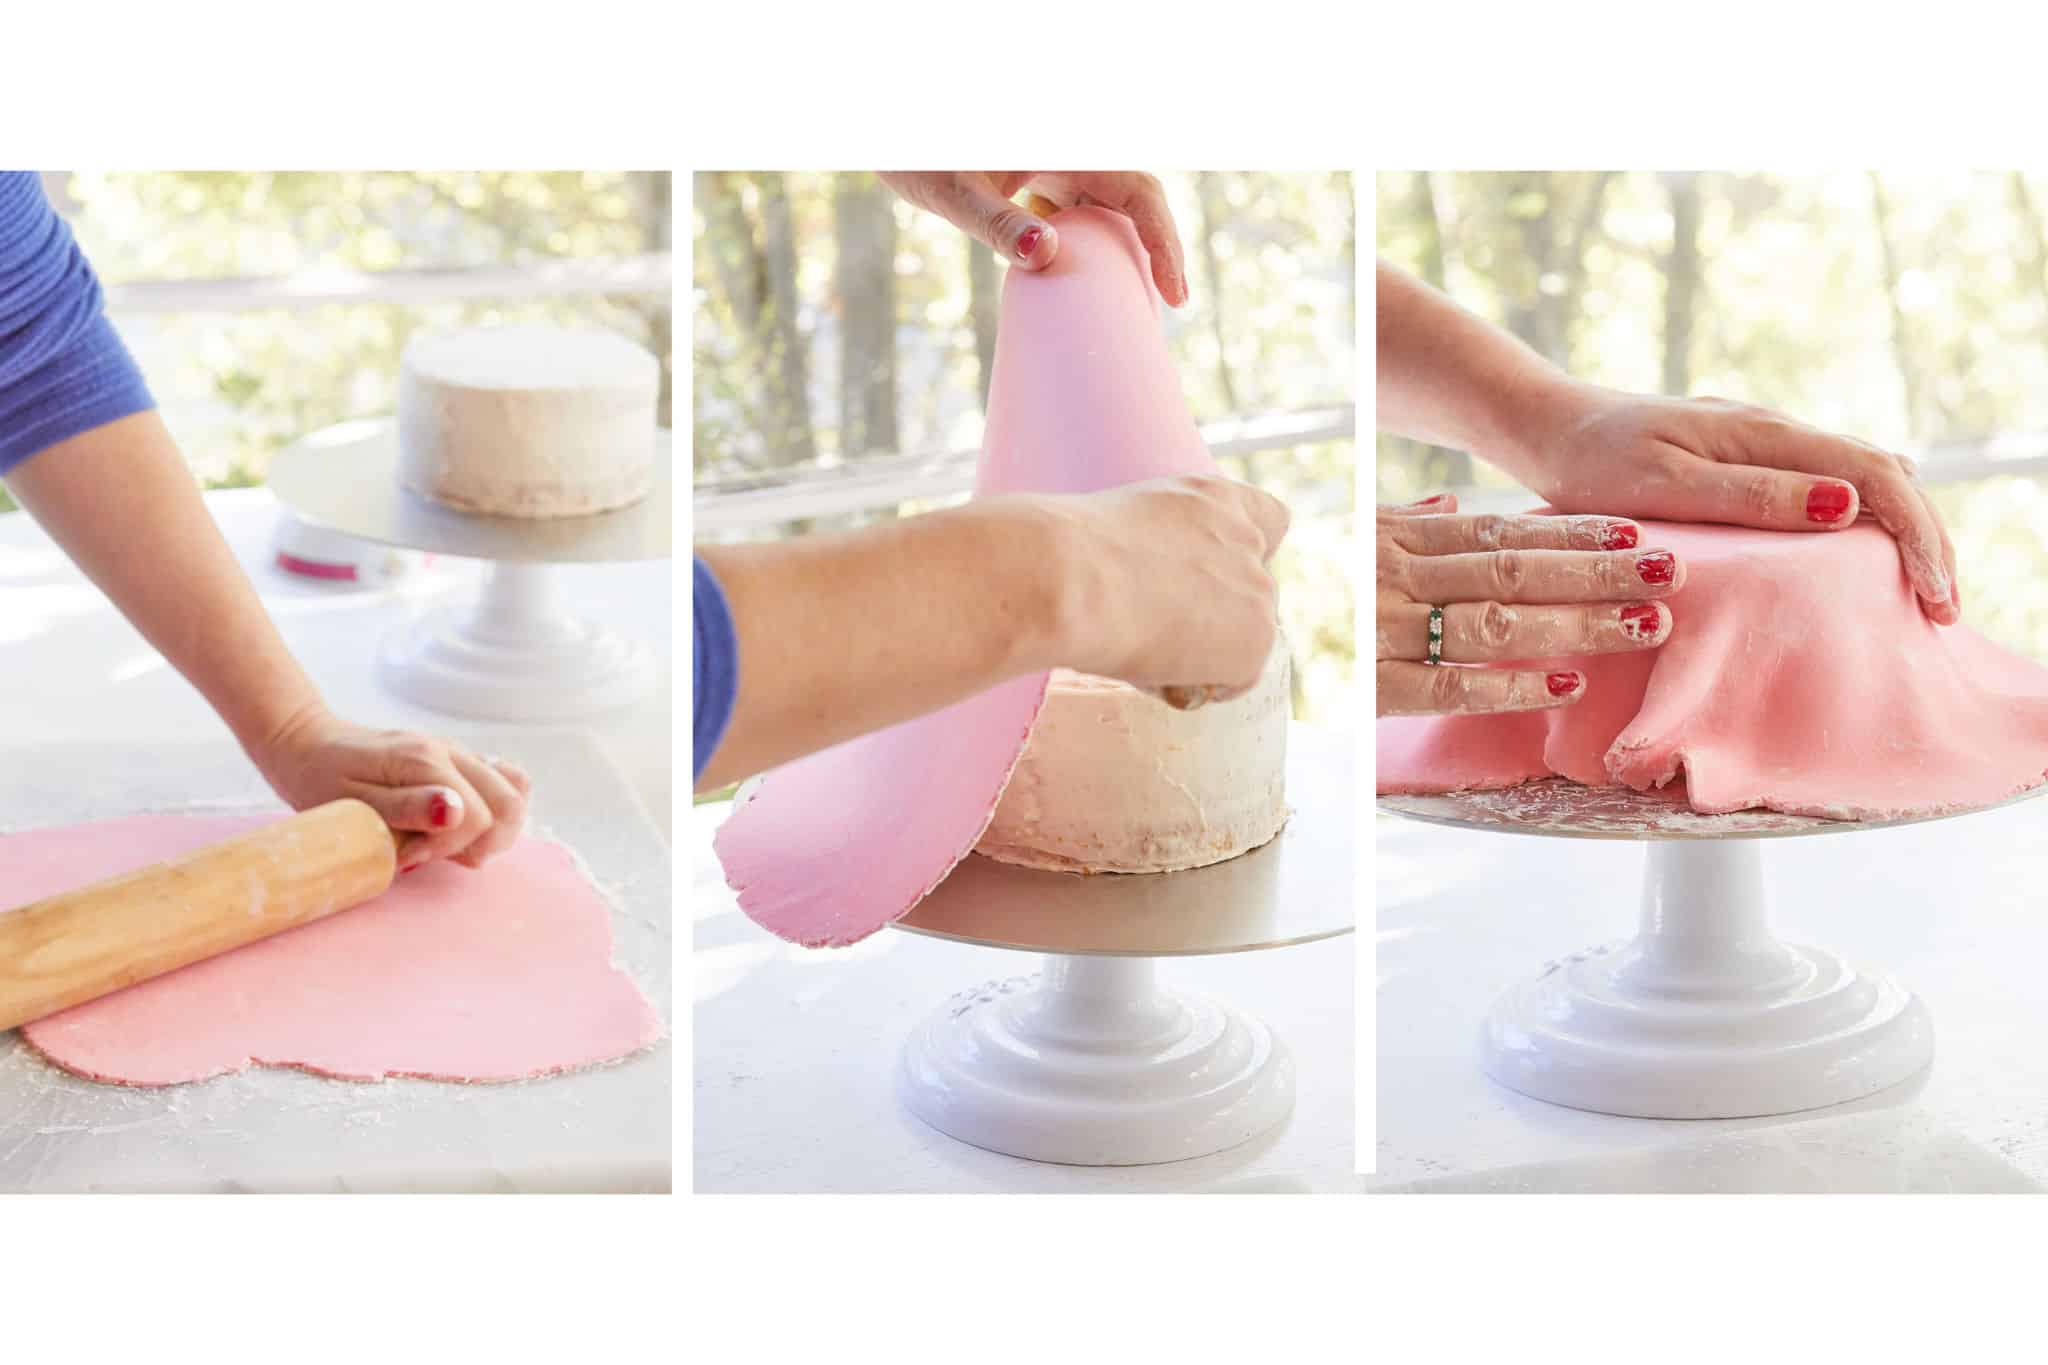 Designer Brand - Edible Icing Cake Wrap Set - 1